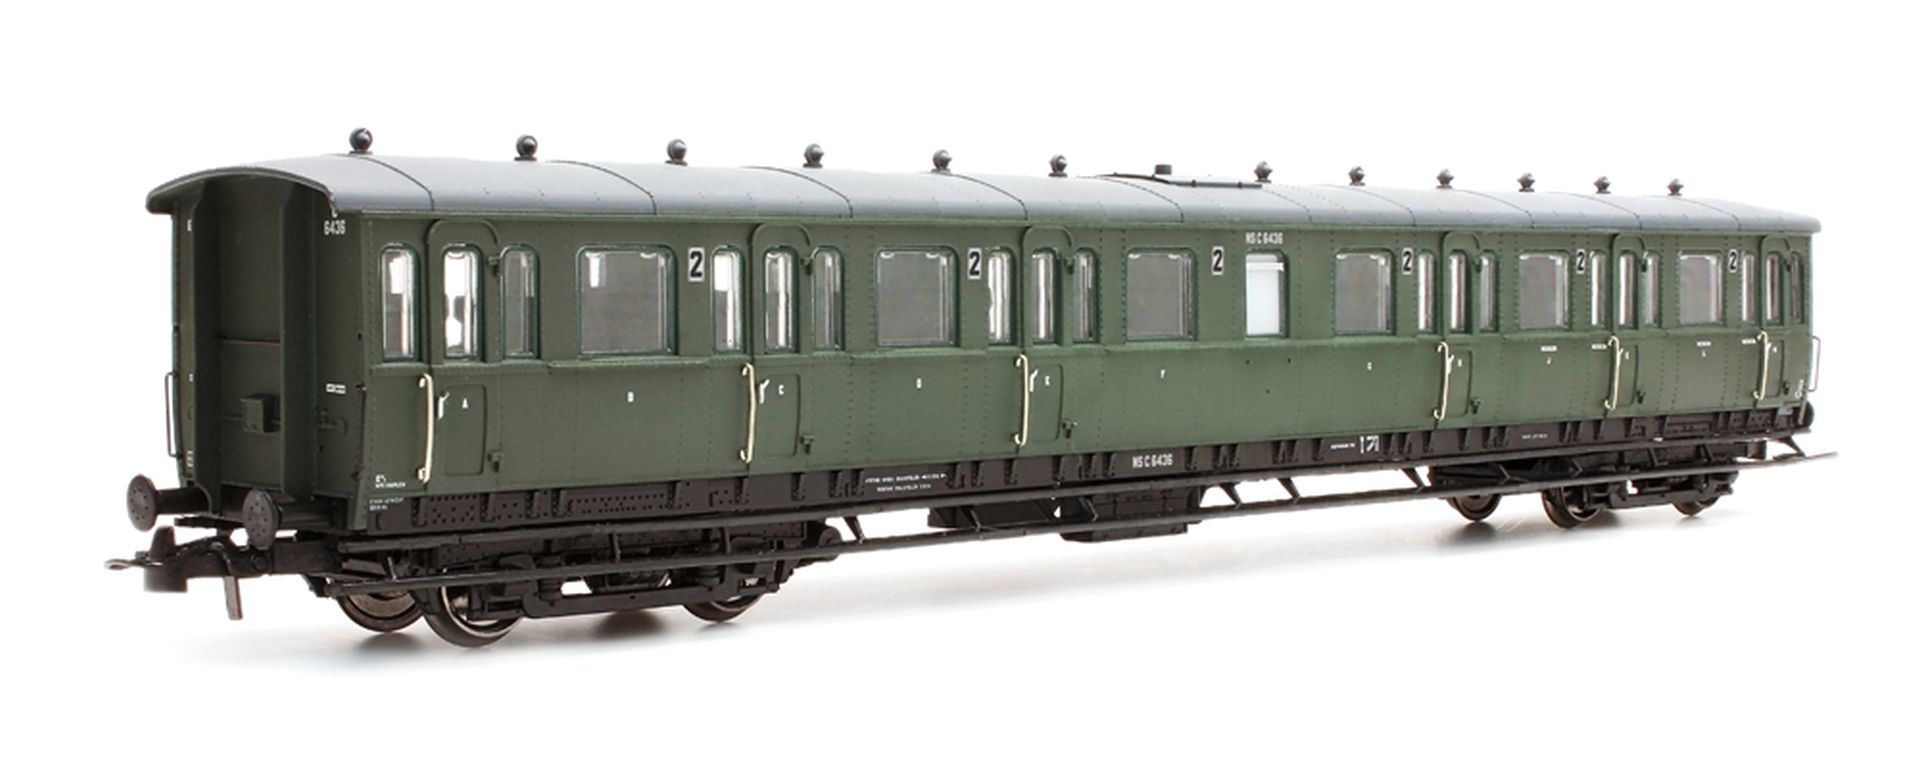 Artitec 20.254.06 - Personenwagen C12c C6411, 2. Klasse, NS, Ep.III